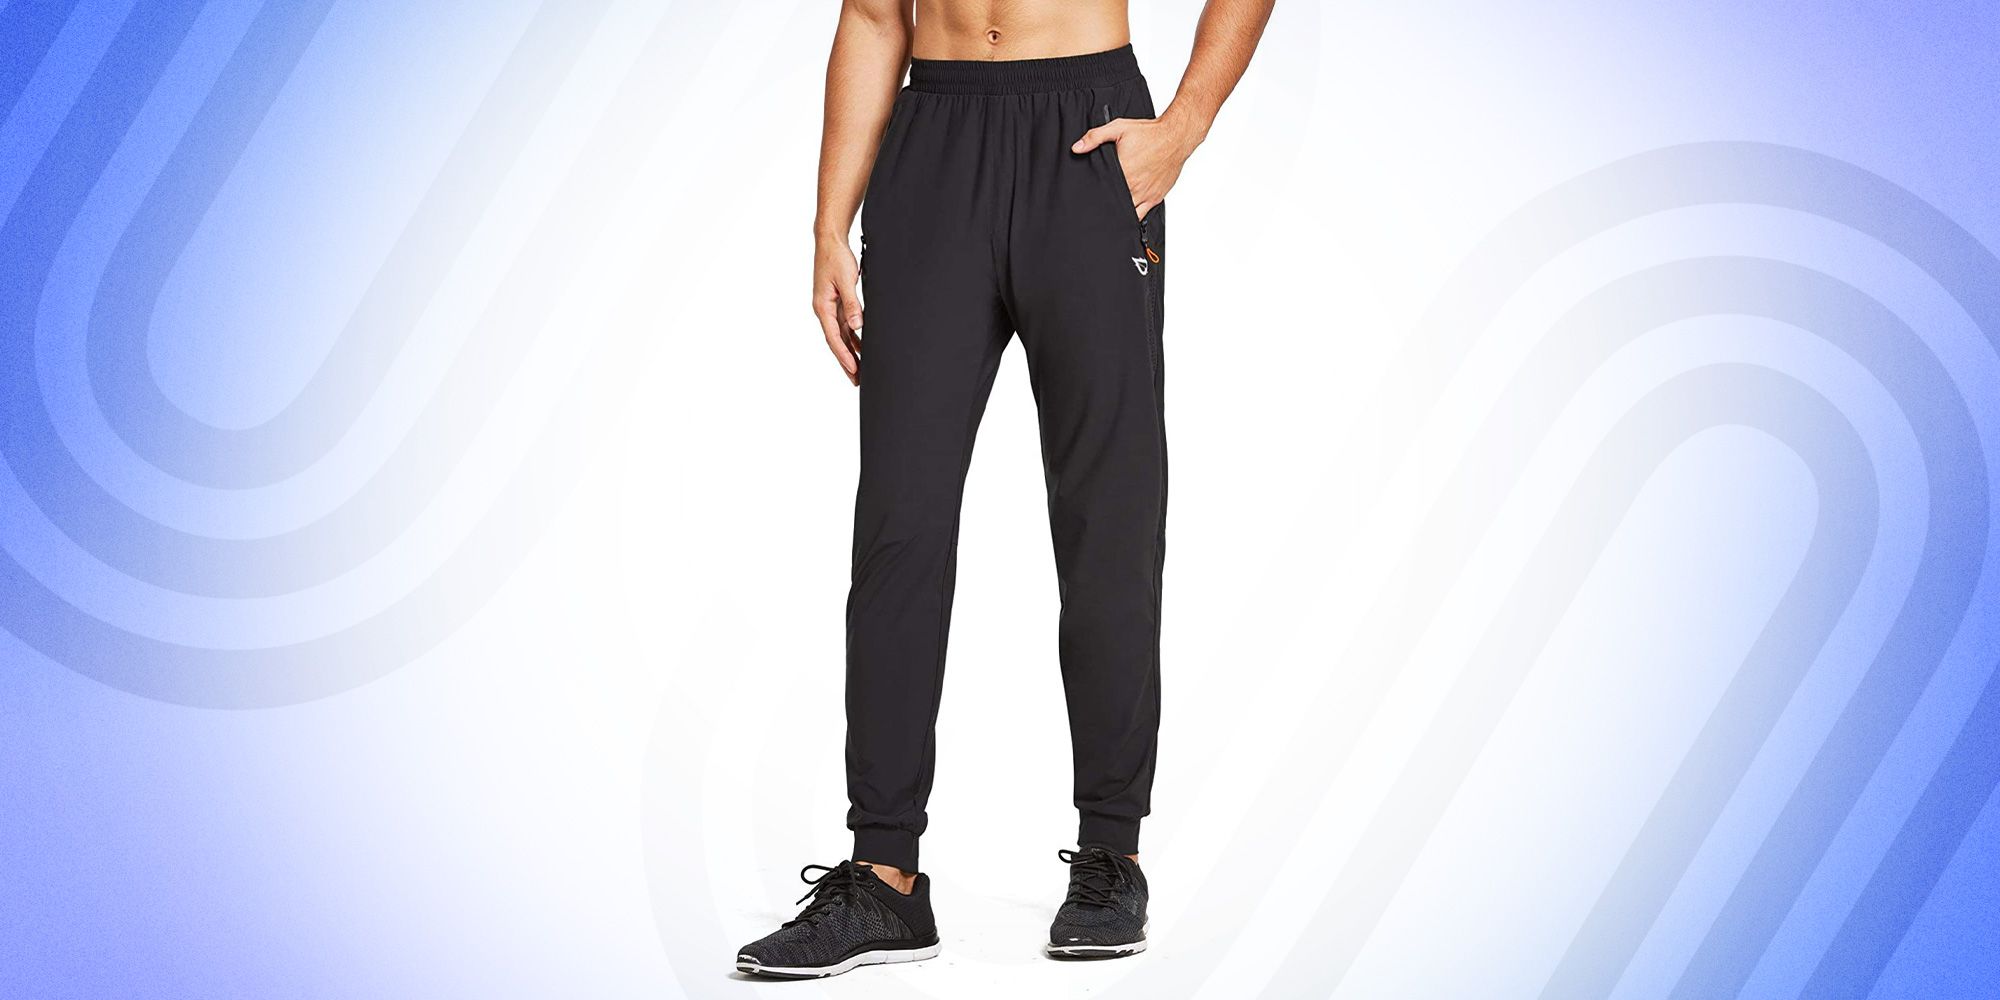 Men's Lightweight Jogger Pants-Slim Fitting Sport Cut Zipper Pocket 